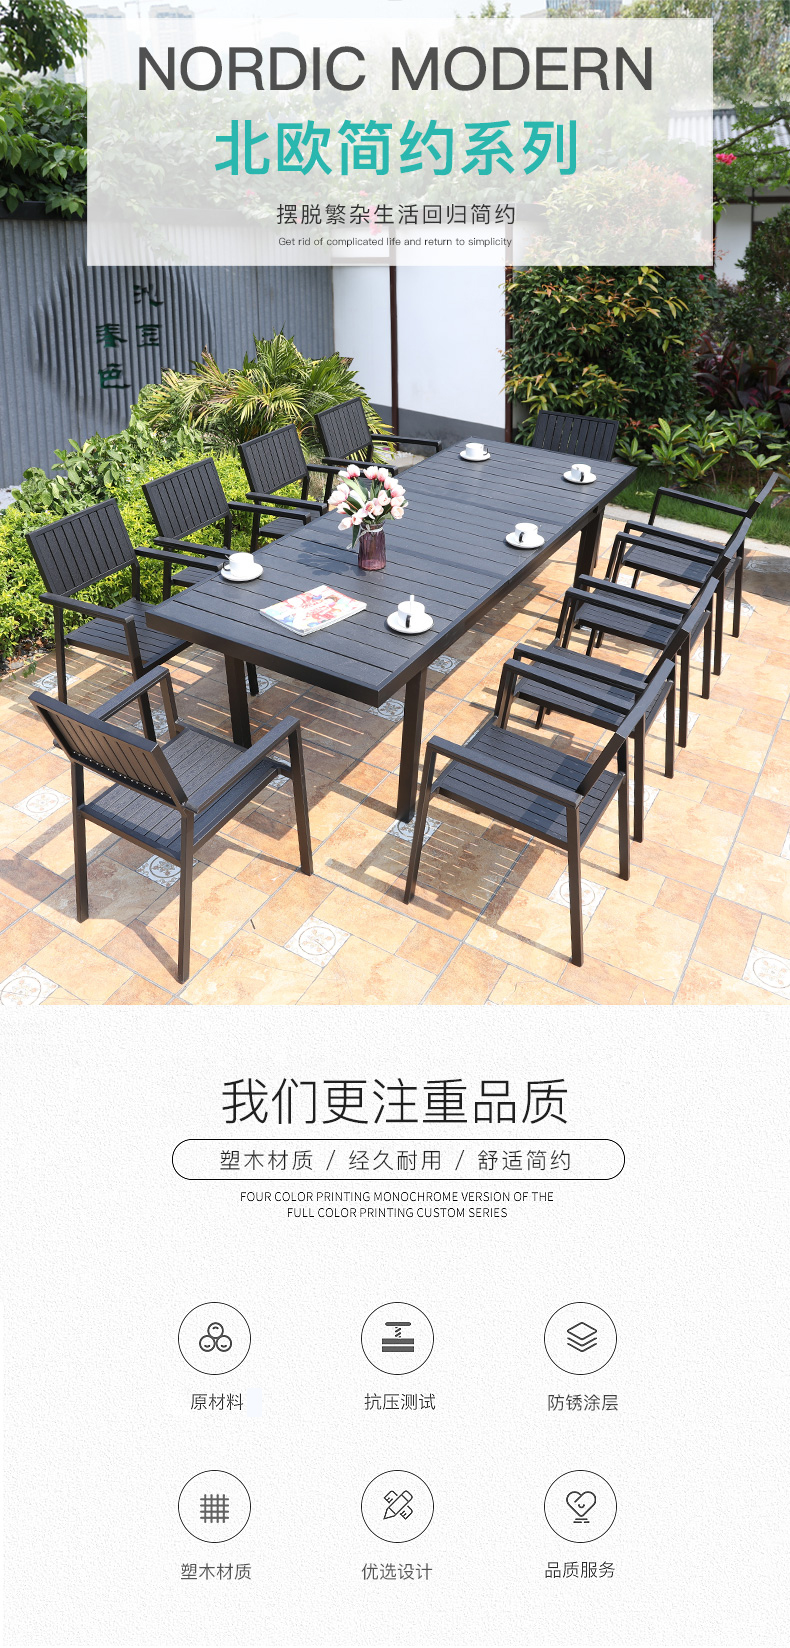 北京户外休闲桌椅(户外休闲便携式折叠桌椅)